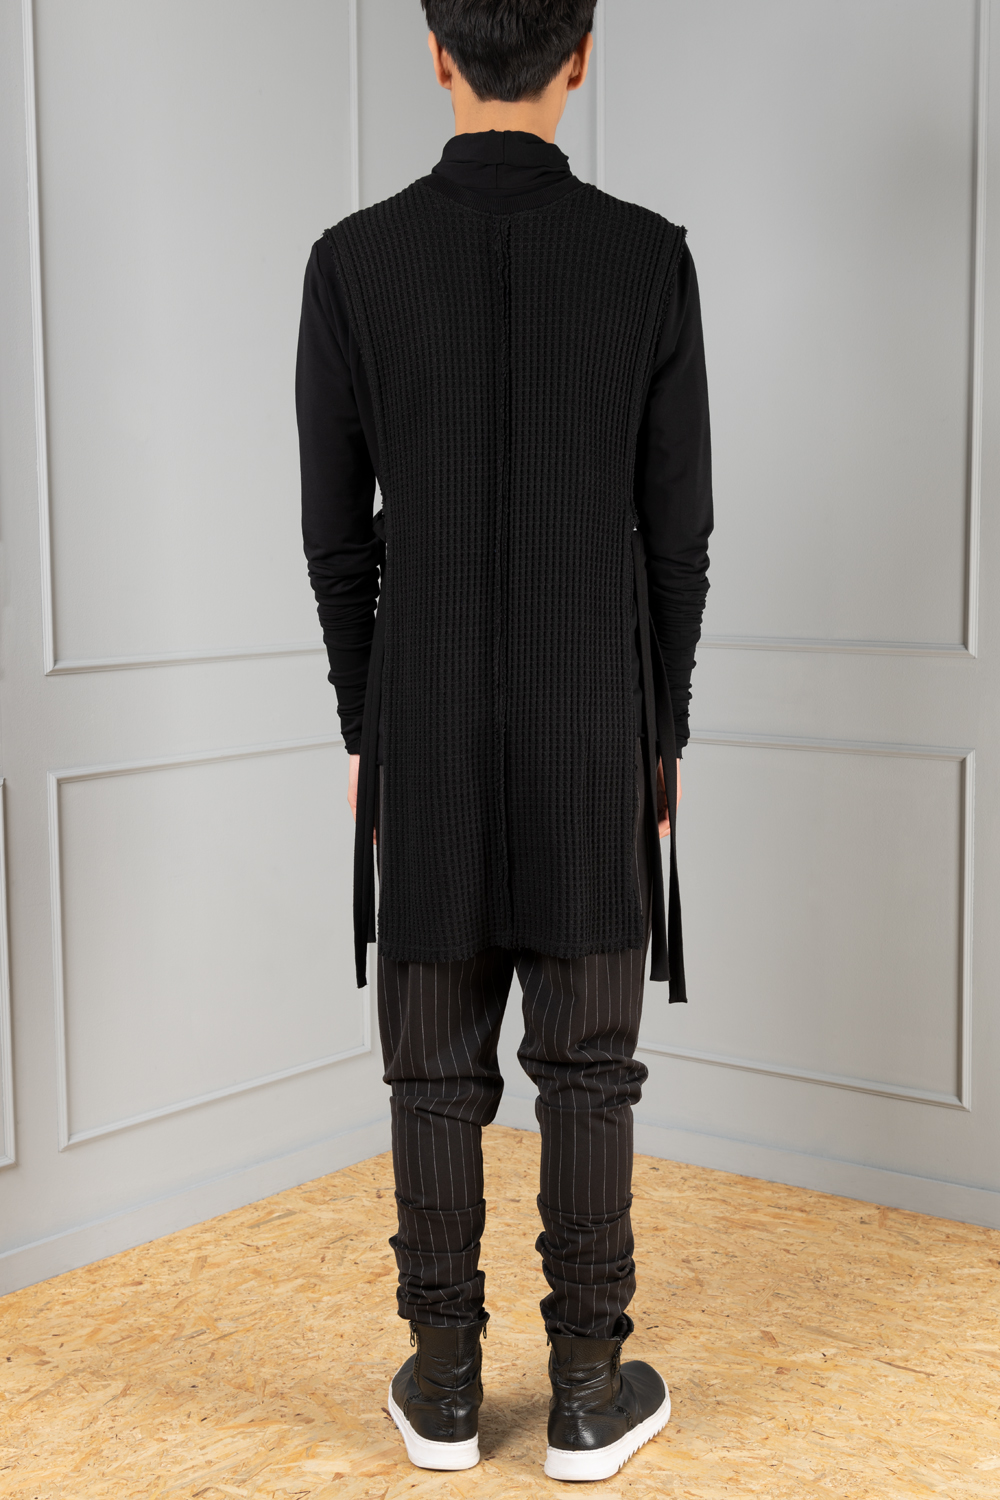 Black open-sides sleeveless men's sweater | Haruco-vert